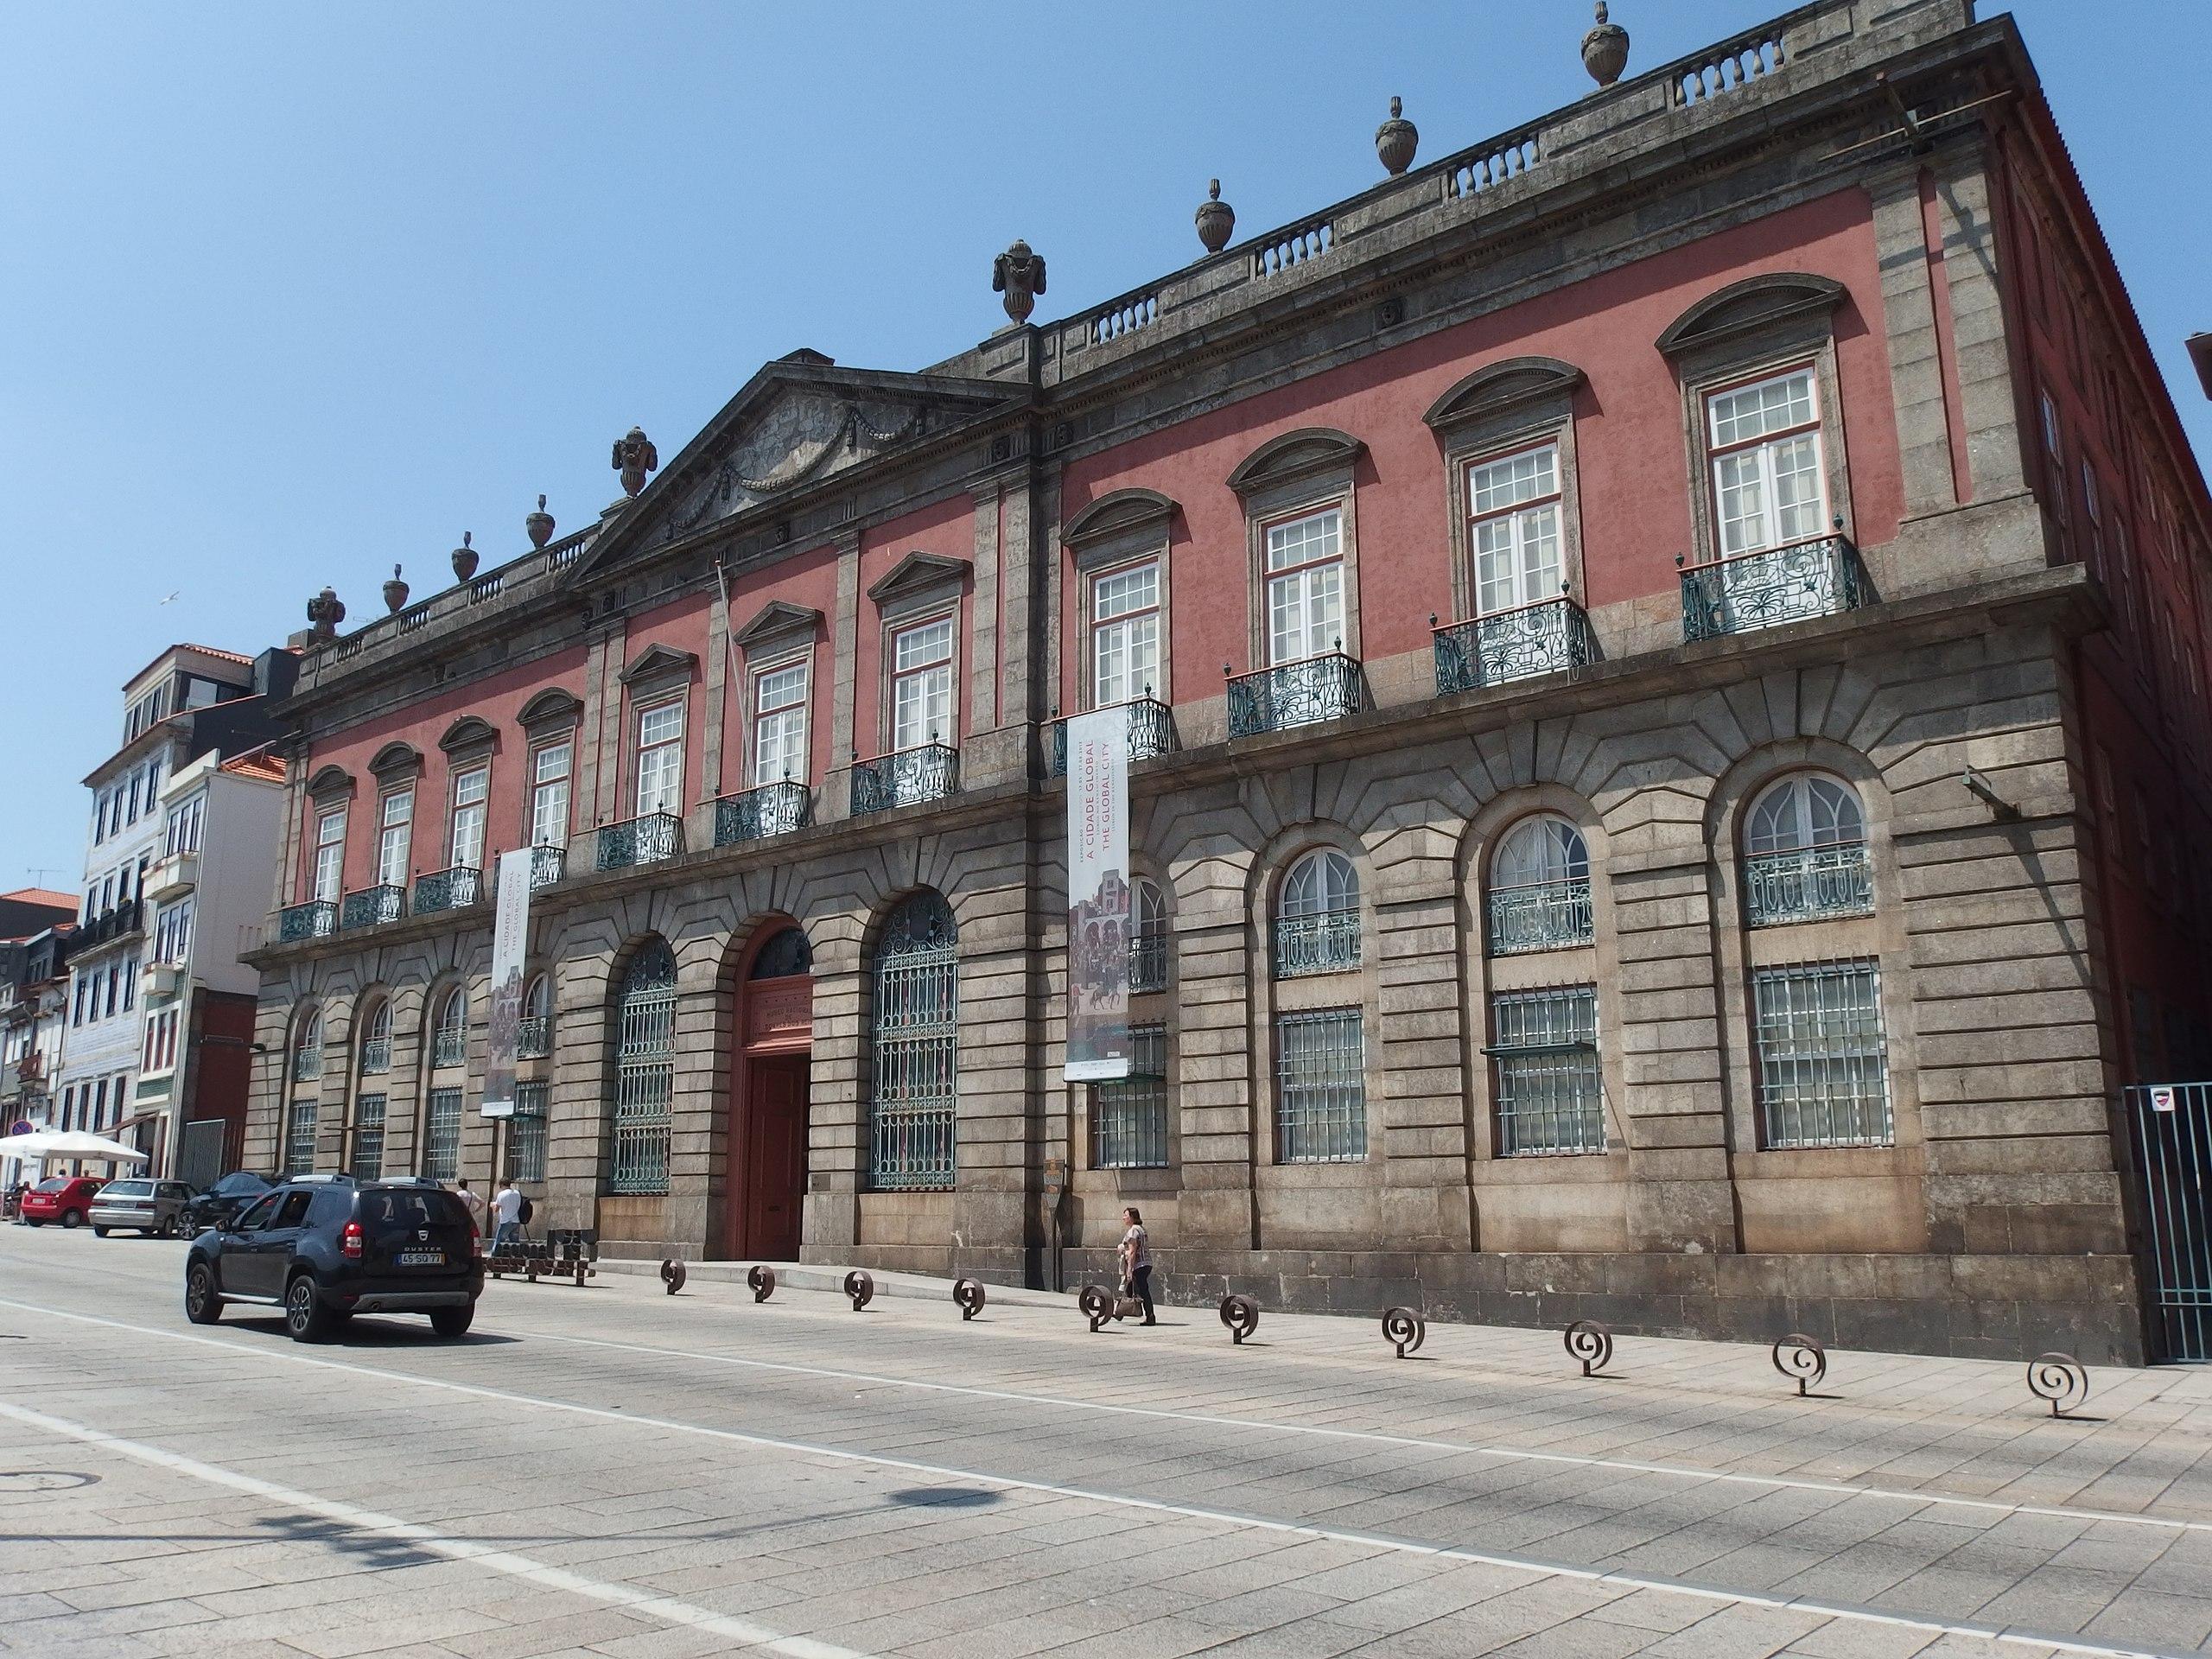 Πόρτο - Εθνικό Μουσείο Σουάρες ντος Ρέις158